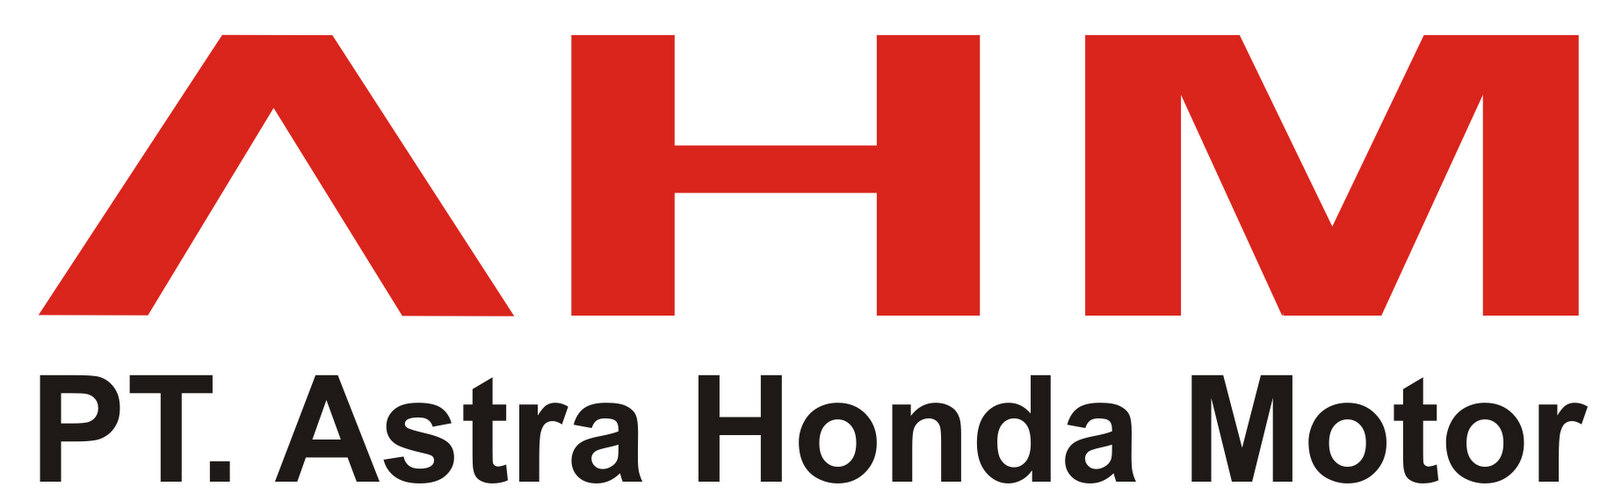 Lowongan Kerja PT Astra Honda Motor Mei 2014 - Kumpulan 